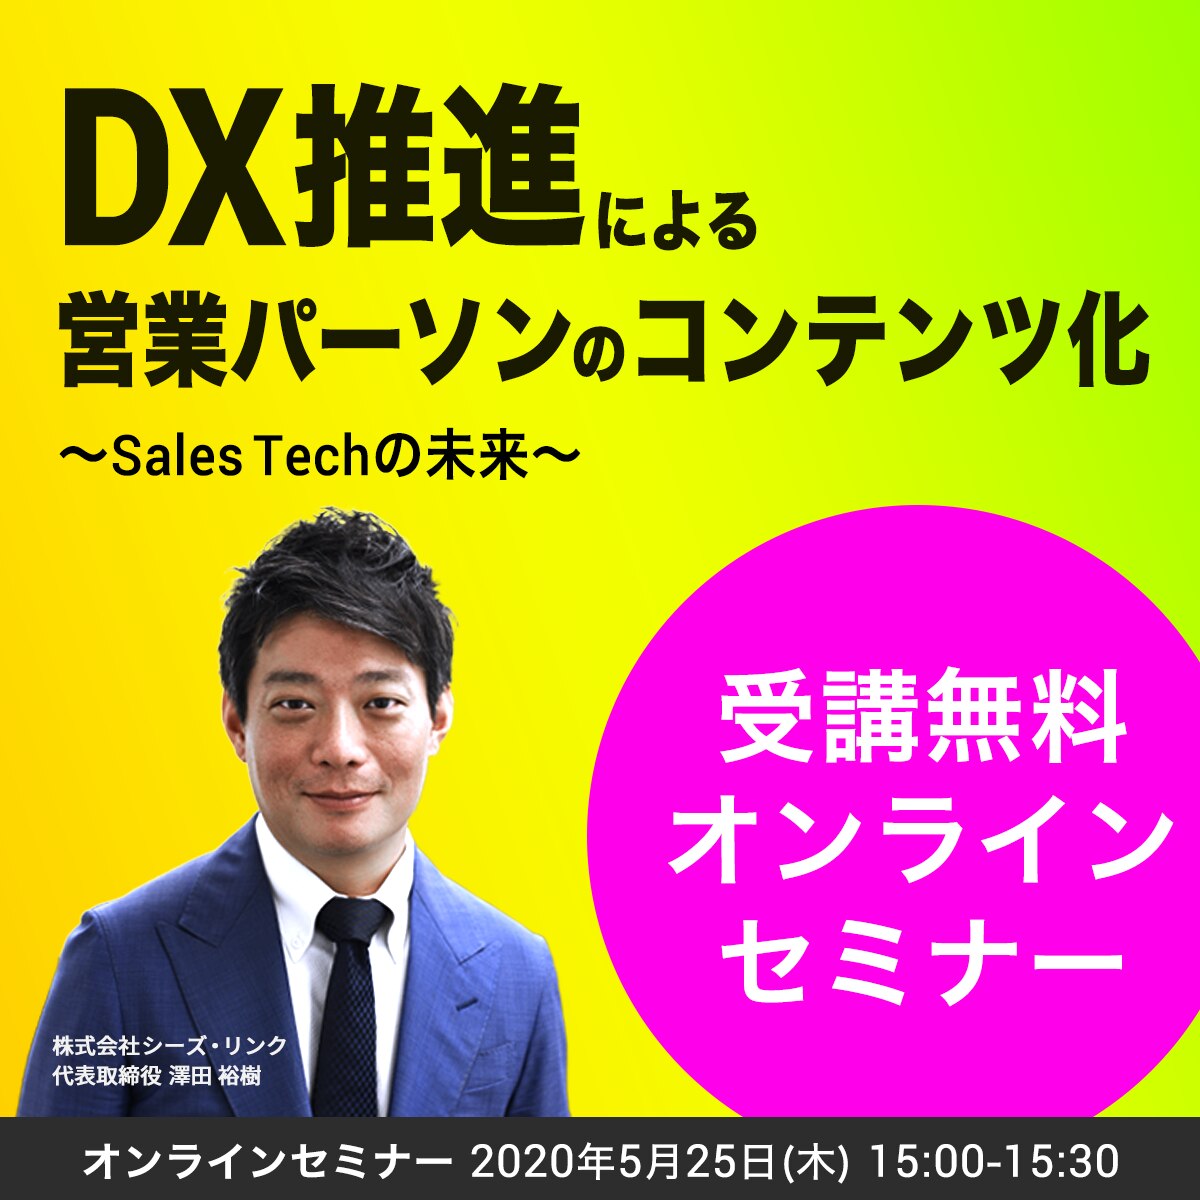 DX推進による営業パーソンのコンテンツ化~Sales Techの未来~